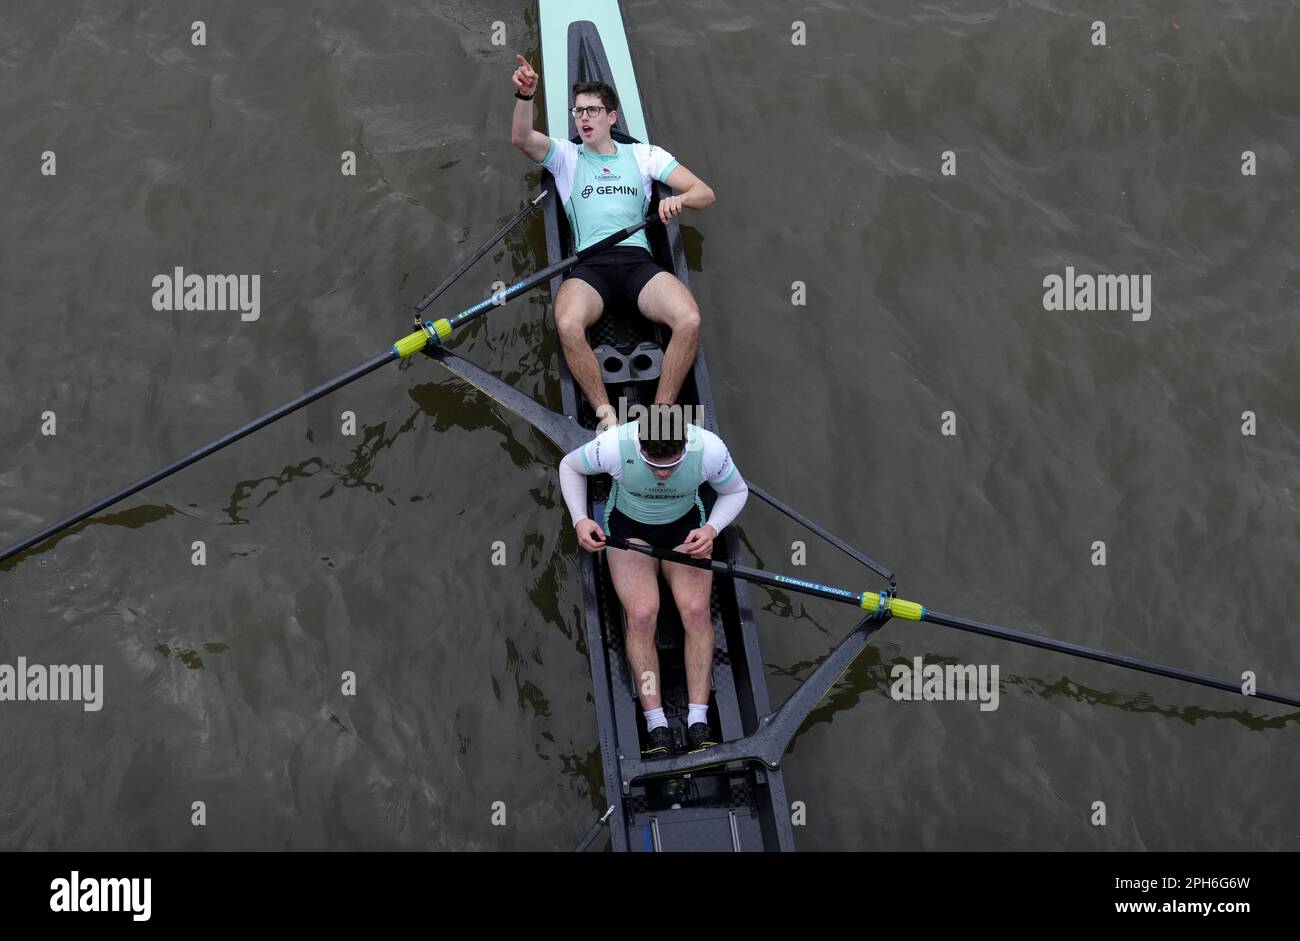 Die Cambridge Crew feiert den Sieg nach dem Herrenrenrenrennen während des Gemini Boat Race 2023 auf der Themse in London. Foto: Sonntag, 26. März 2023. Stockfoto